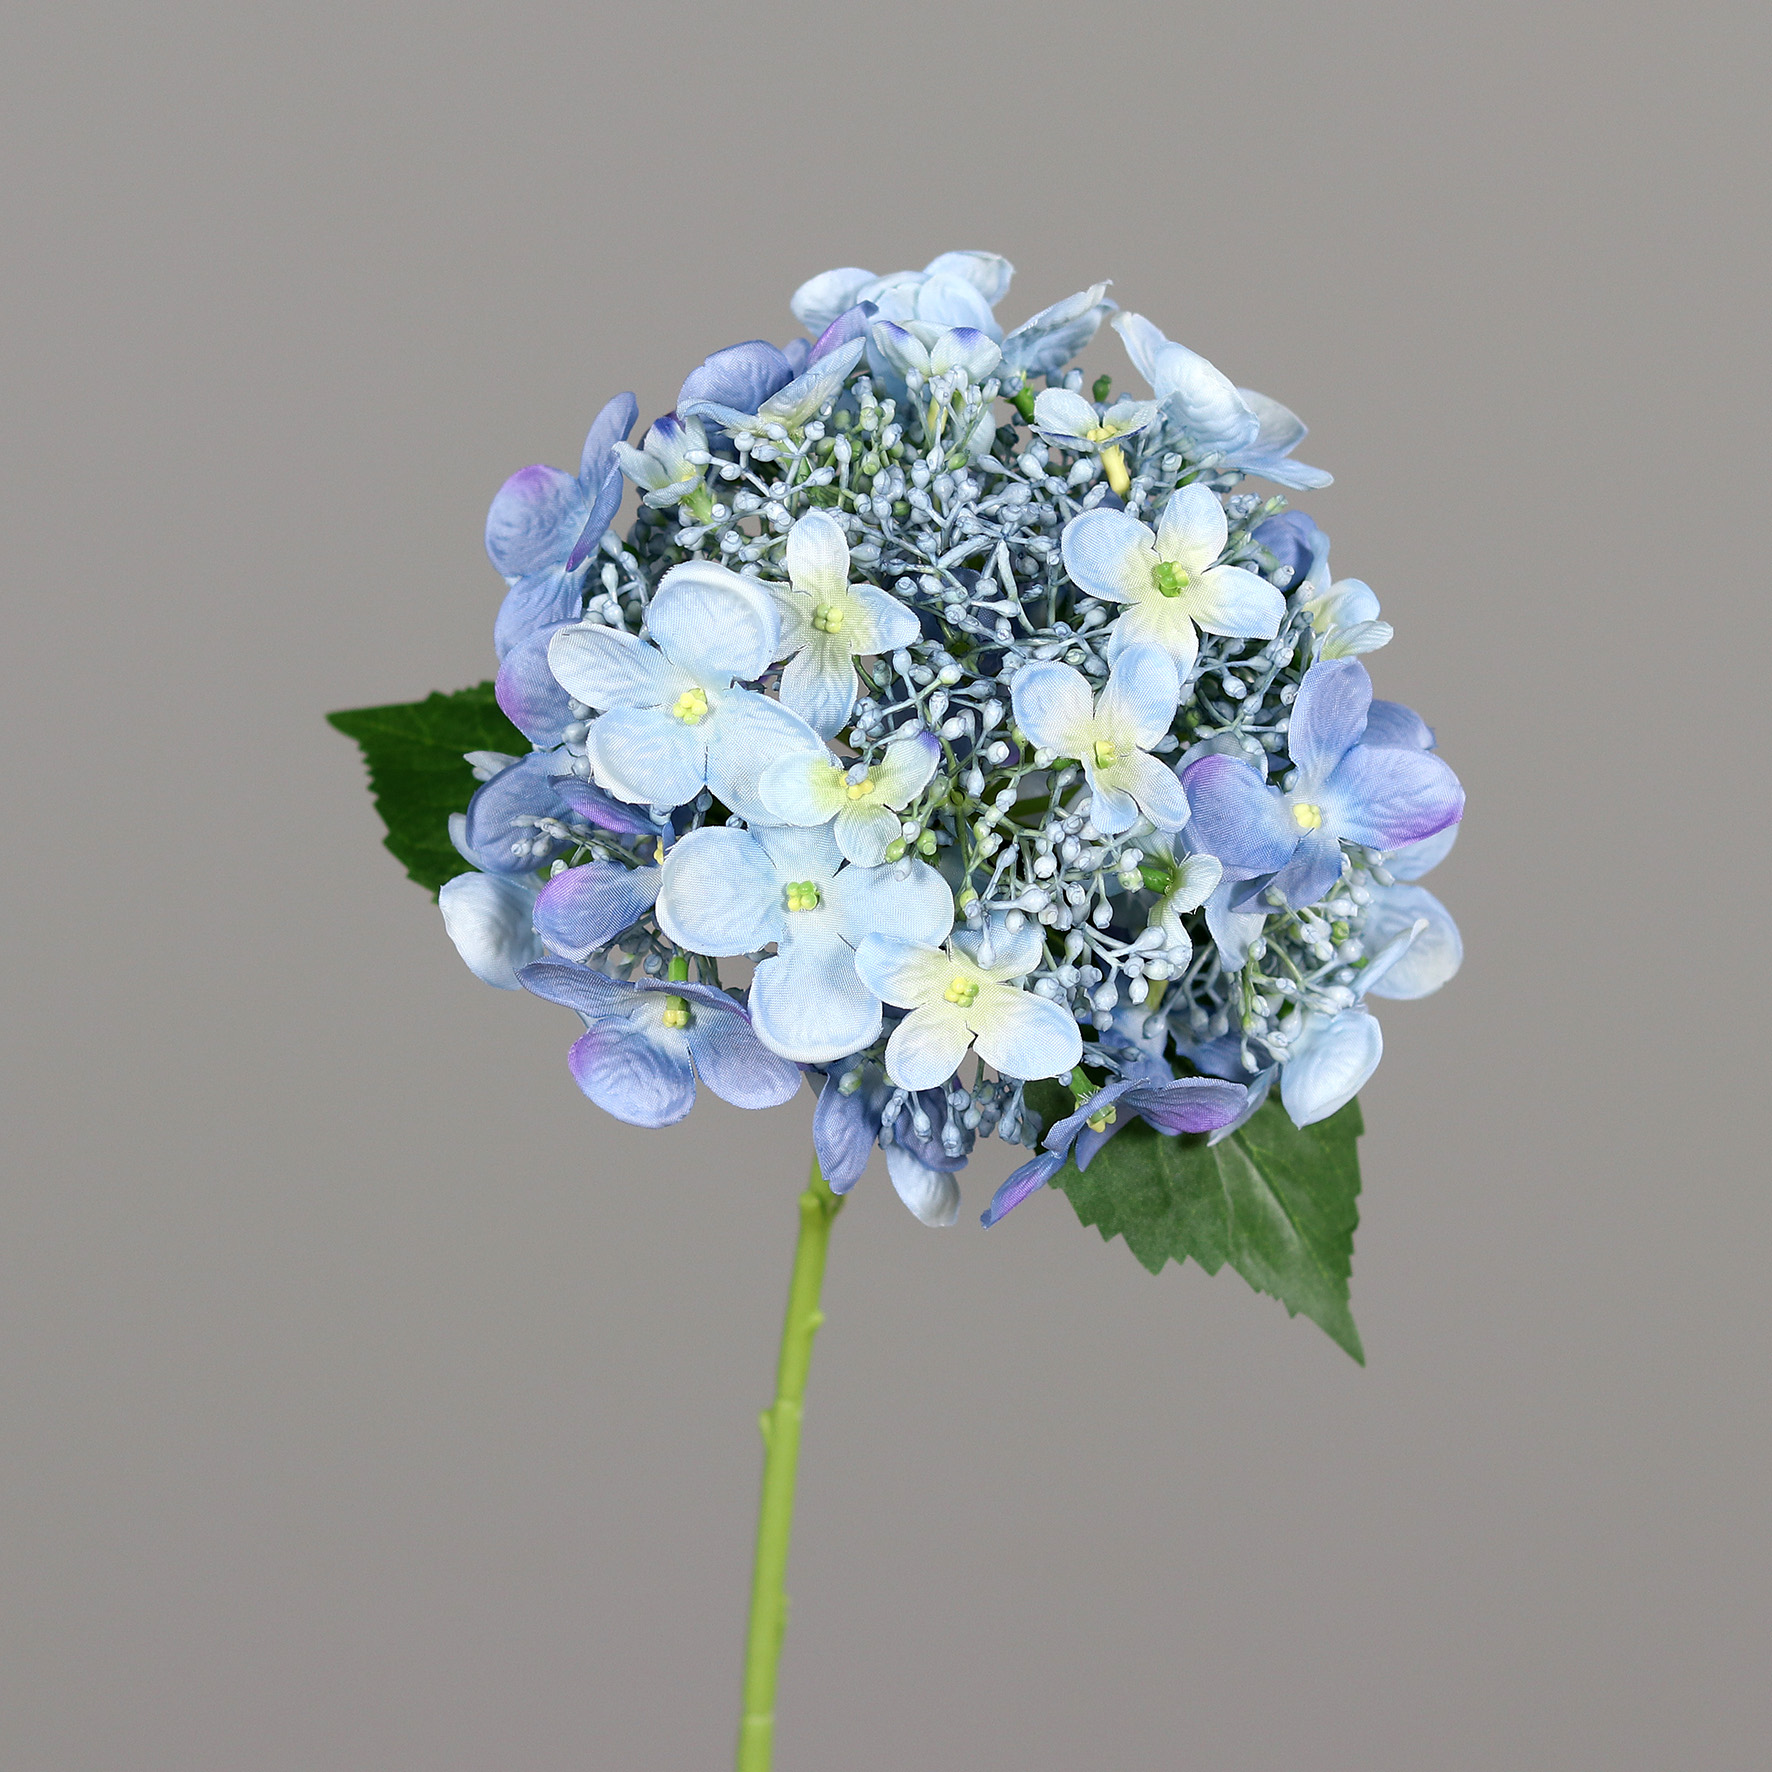 Hortensie 32cm blau DP Kunstlbumen künstliche Blumen Hortensien Hydrangea